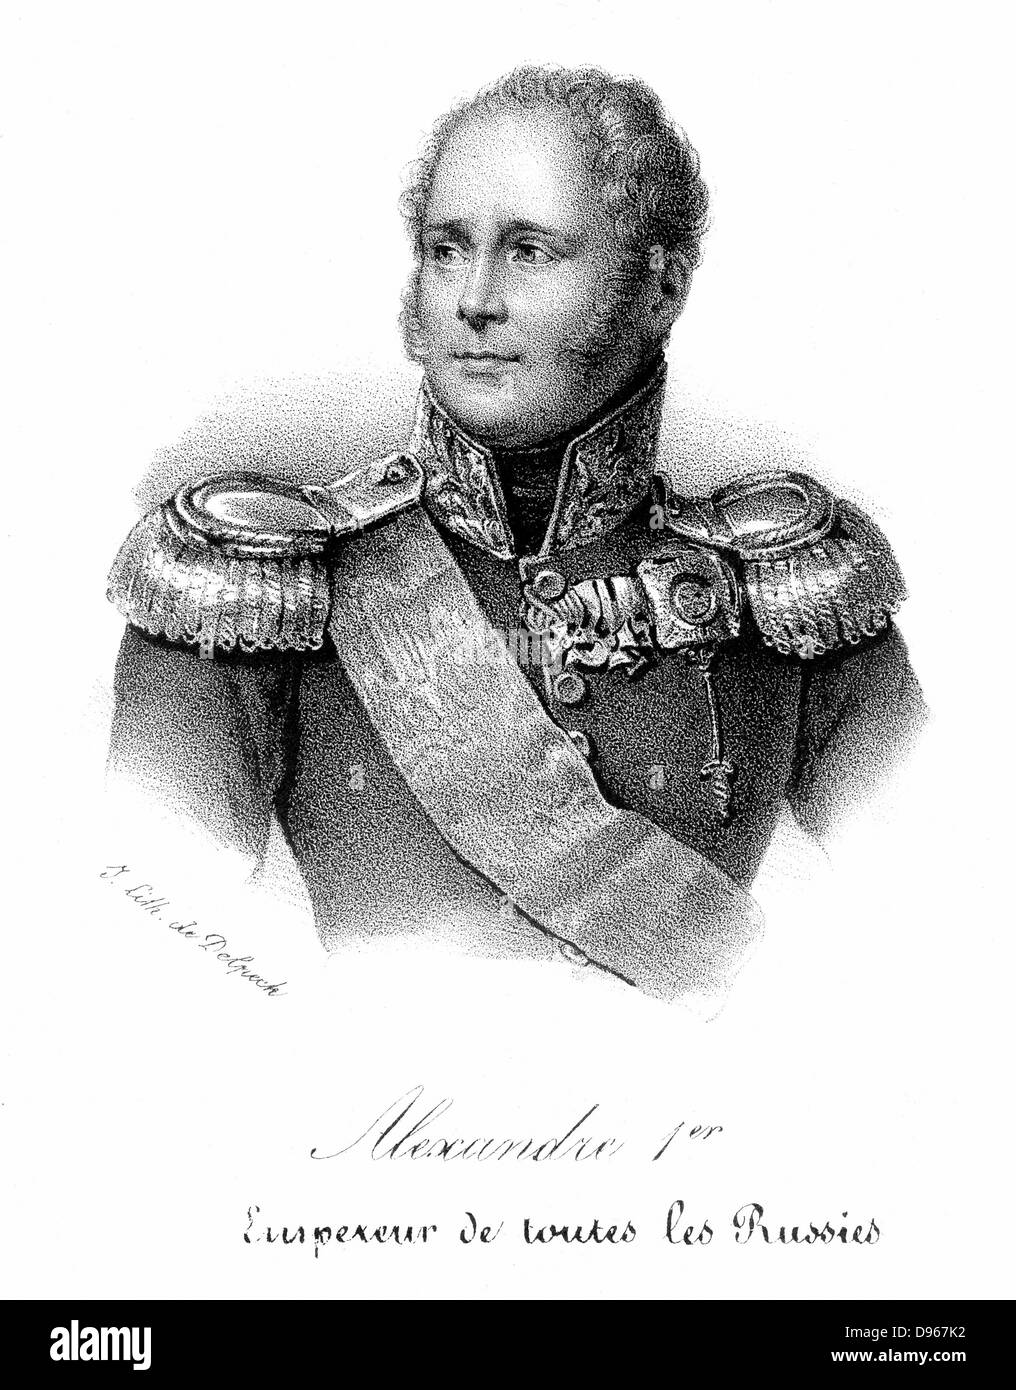 Alejandro I (1777-1825), zar de Rusia desde 1801, en uniforme militar. Litografía francesa c1830. Foto de stock